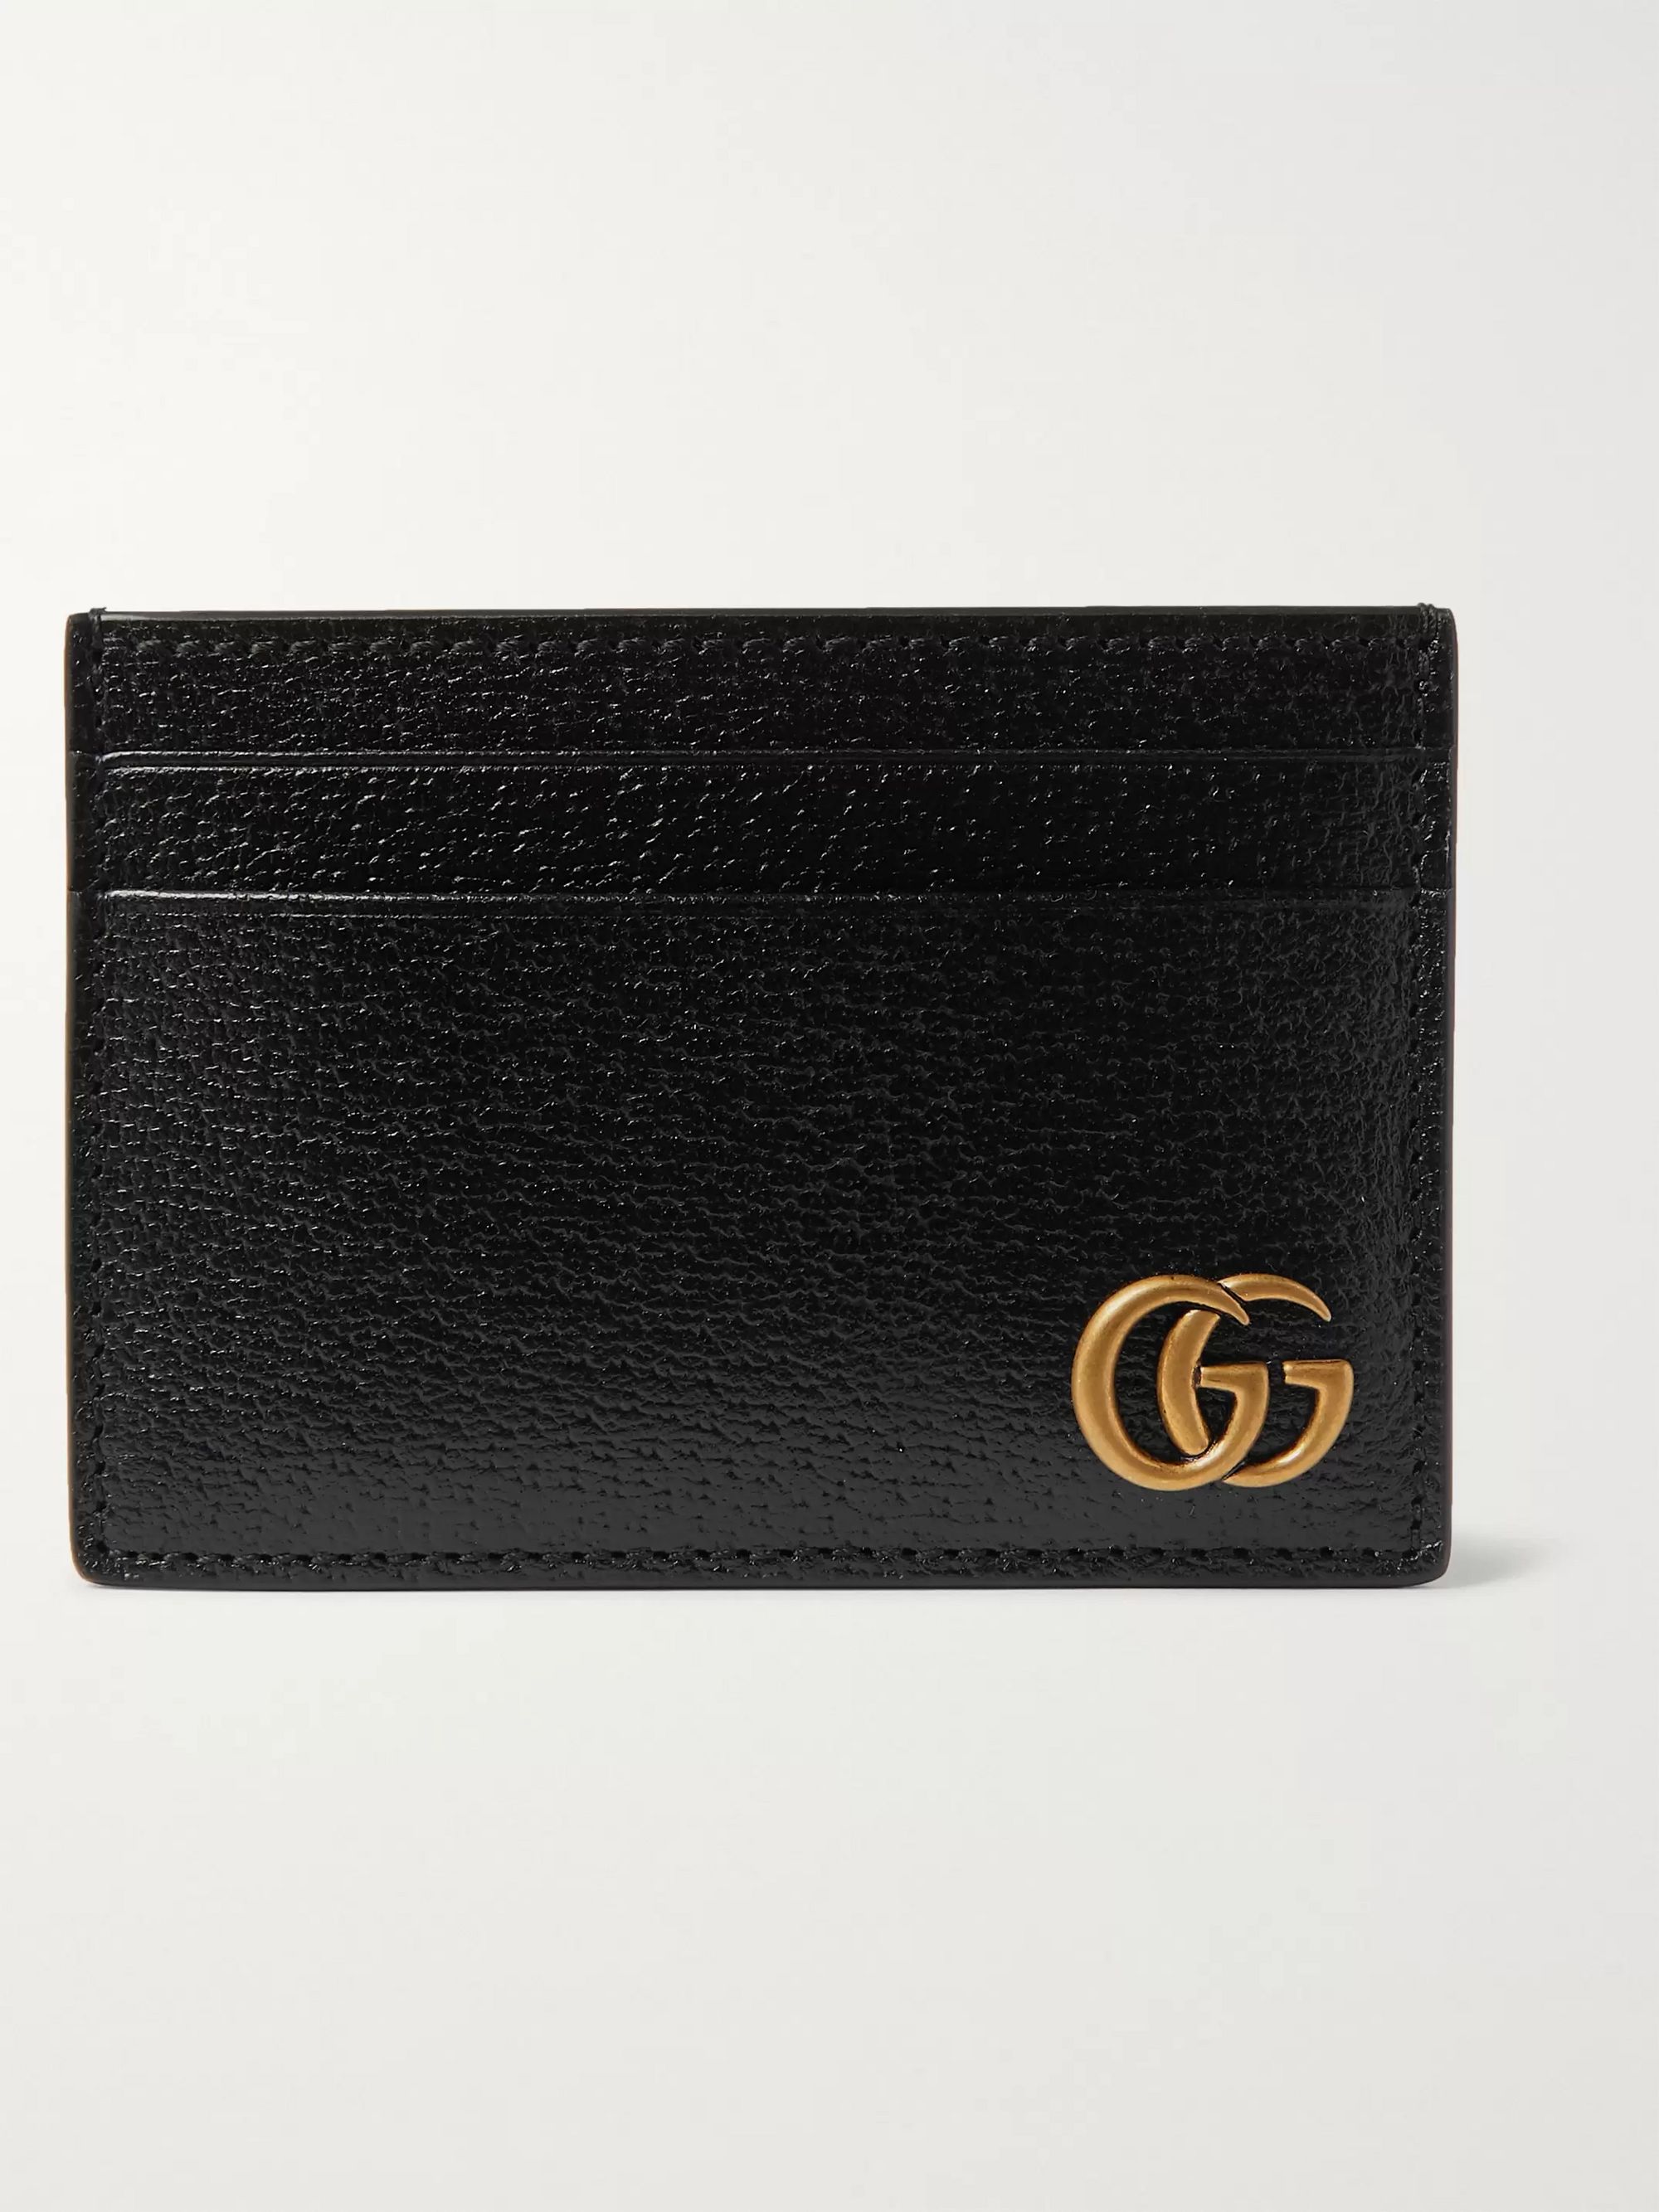 구찌 카드지갑 Gucci GG Marmont Full-Grain Leather Cardholder with Money Clip,Black